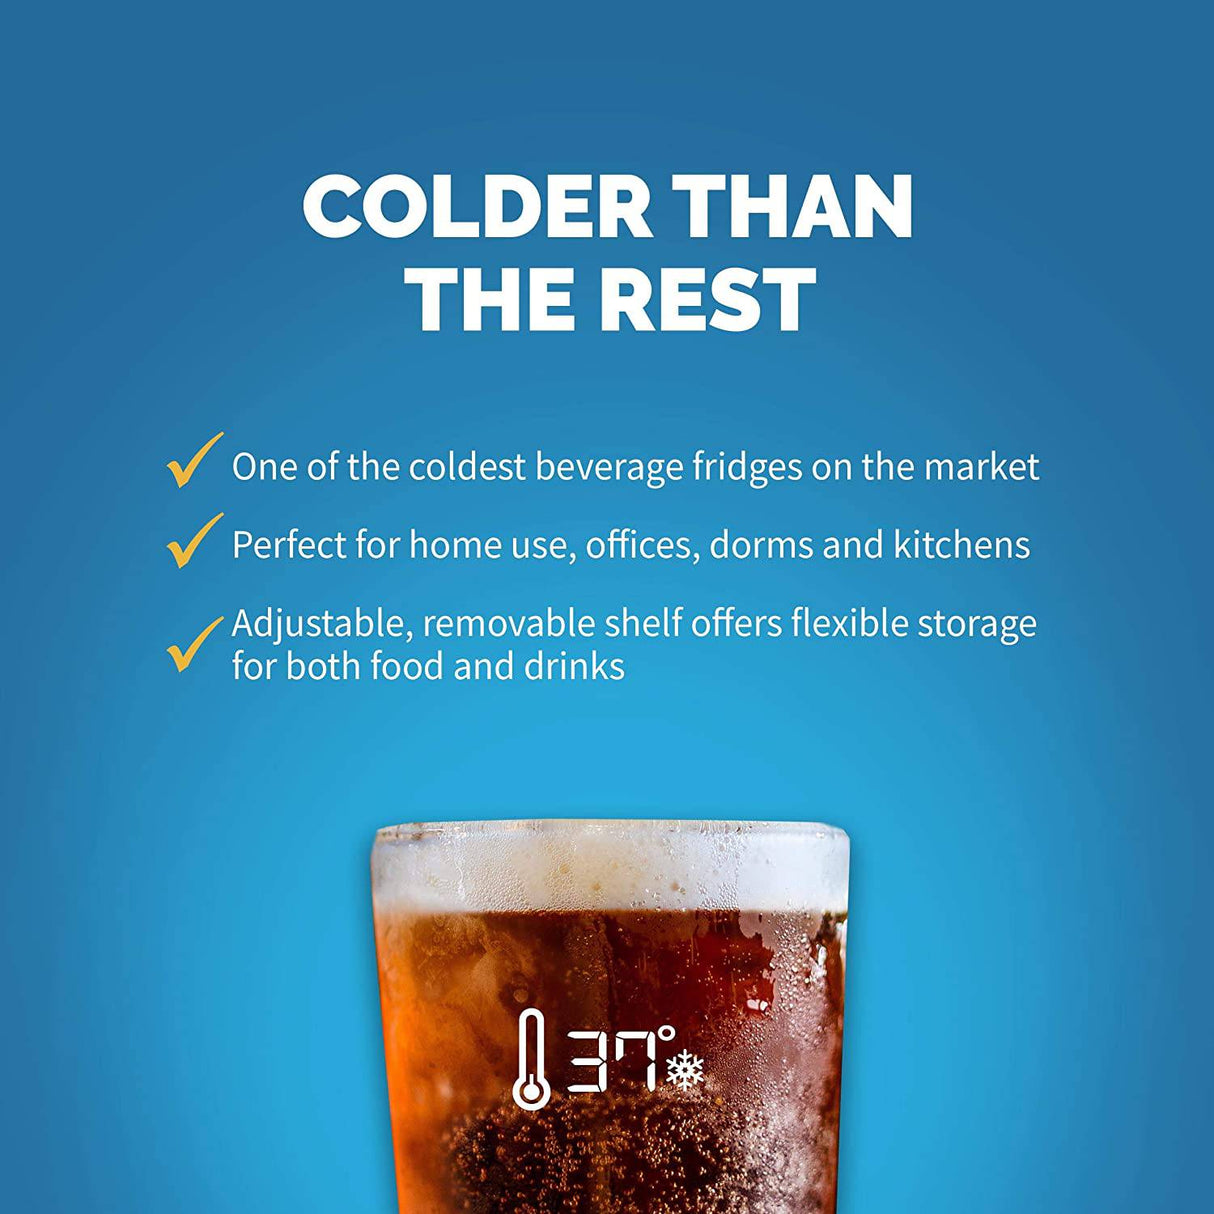 NewAir Mini refrigerador y enfriador de bebidas, refrigerador de puerta de vidrio independiente con capacidad para 60 latas, se enfría a 37 grados Organizador de bebidas perfecto para cerveza, vino, refrescos y pop - DIGVICE MX